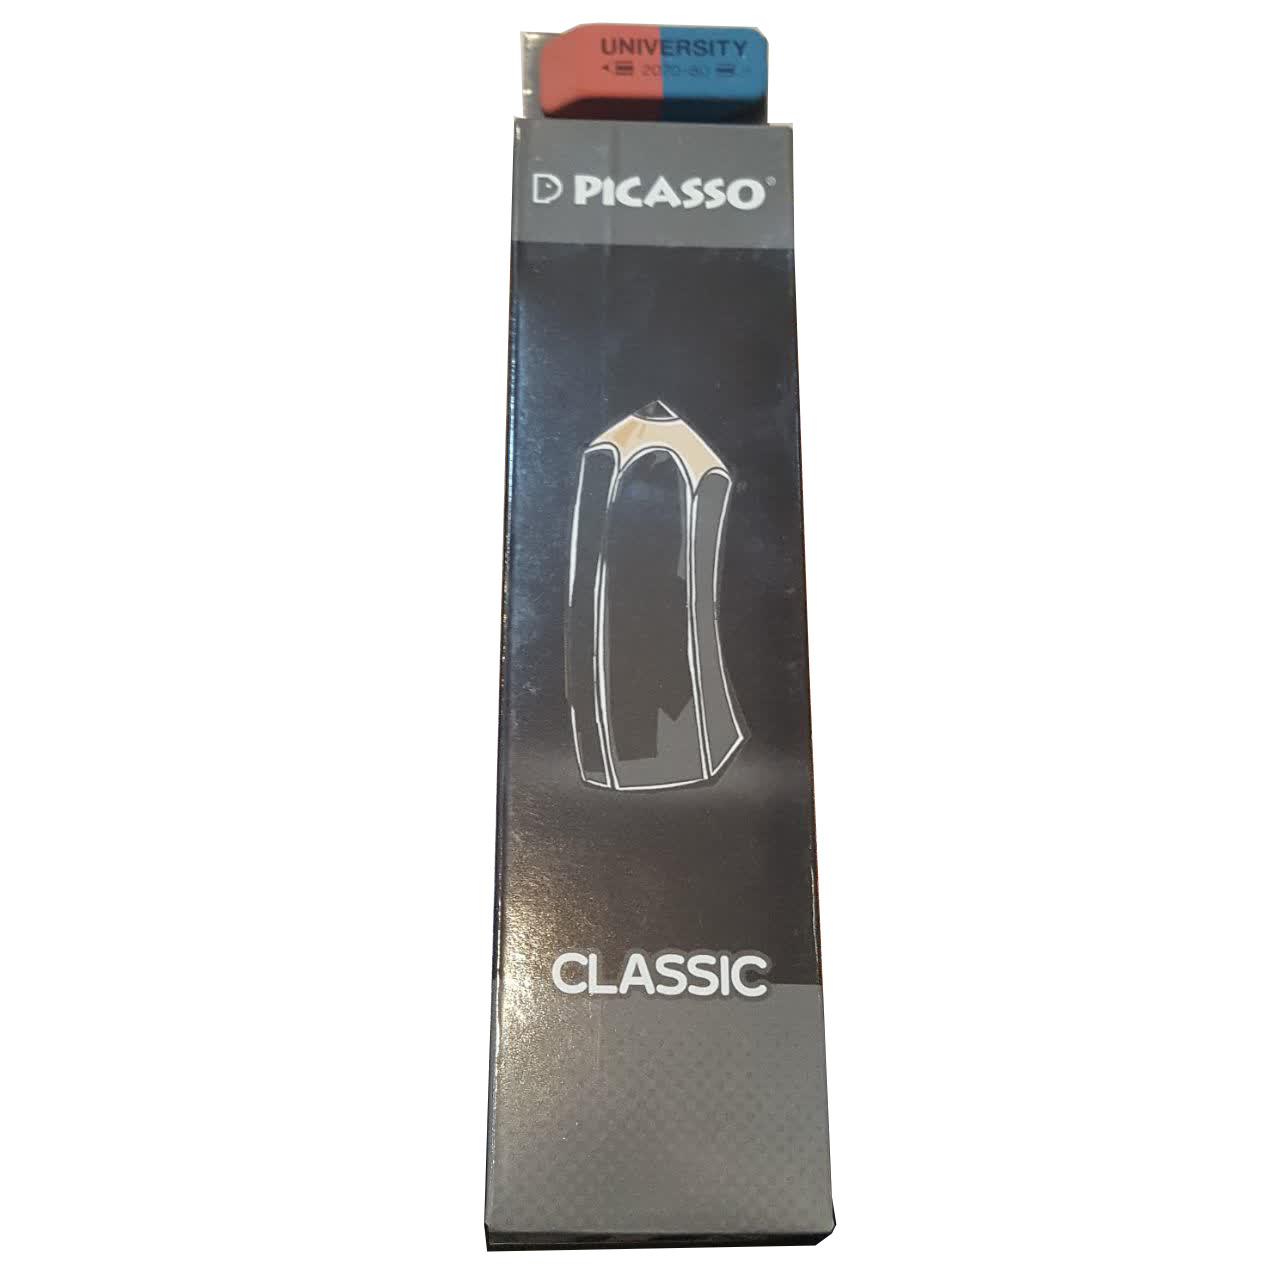 مداد مشکی پیکاسو مدل کلاسیک بسته ی 12 عددی به همراه یک عدد پاک کن